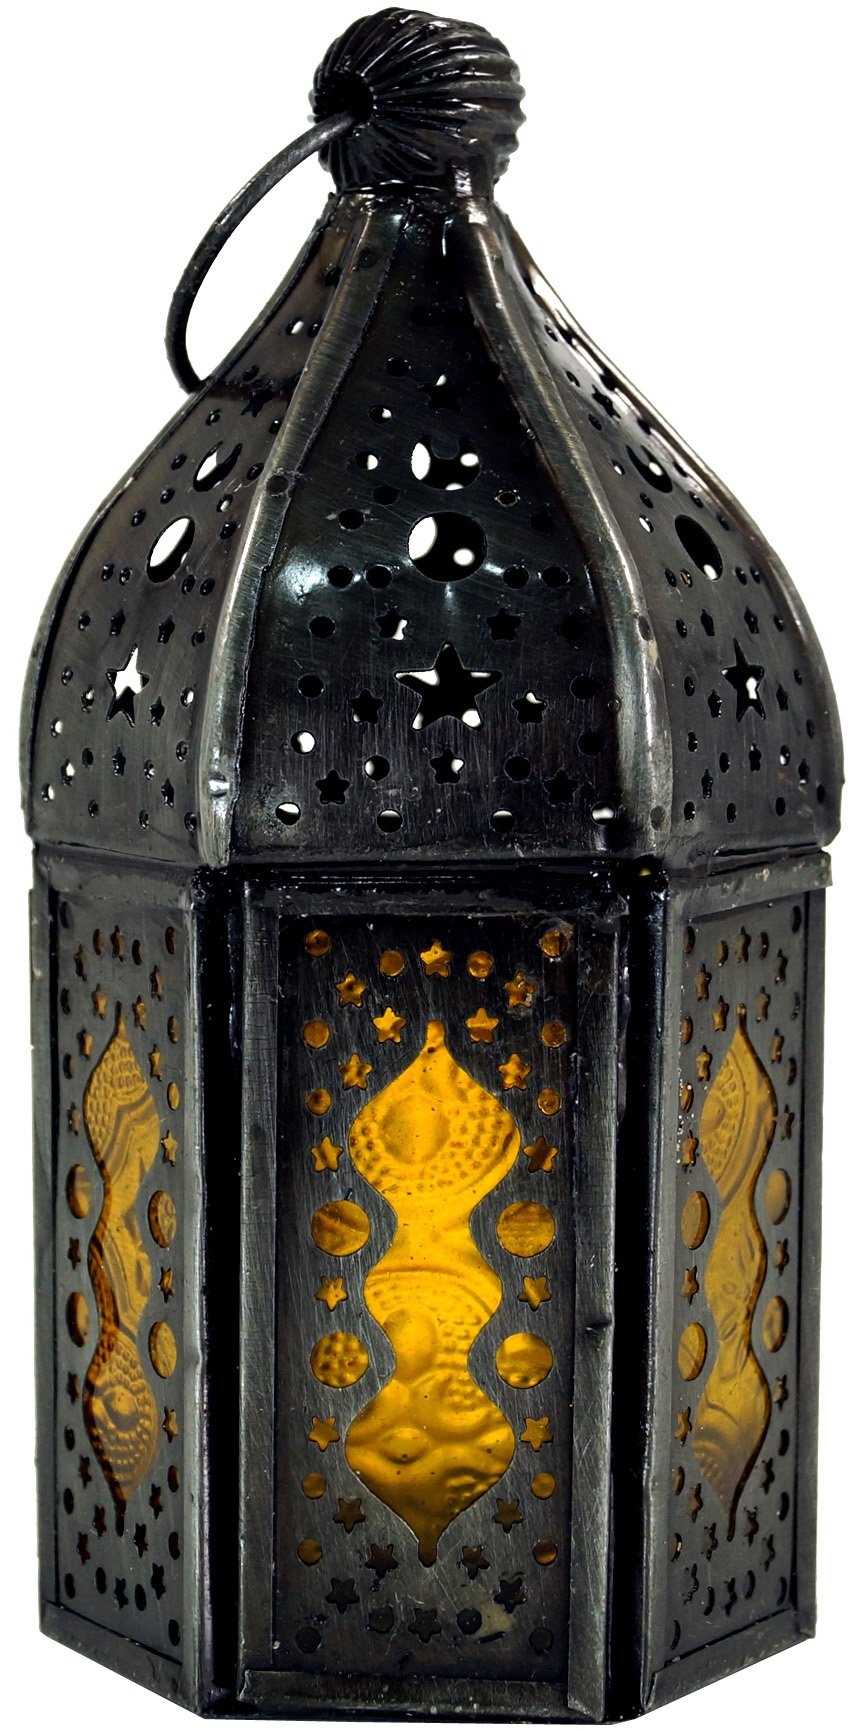 GURU SHOP Orientalische Metall/Glas Laterne in Marrokanischem Design, Windlicht, Gelb, Farbe: Gelb, 14x6x6 cm, Orientalische Laternen